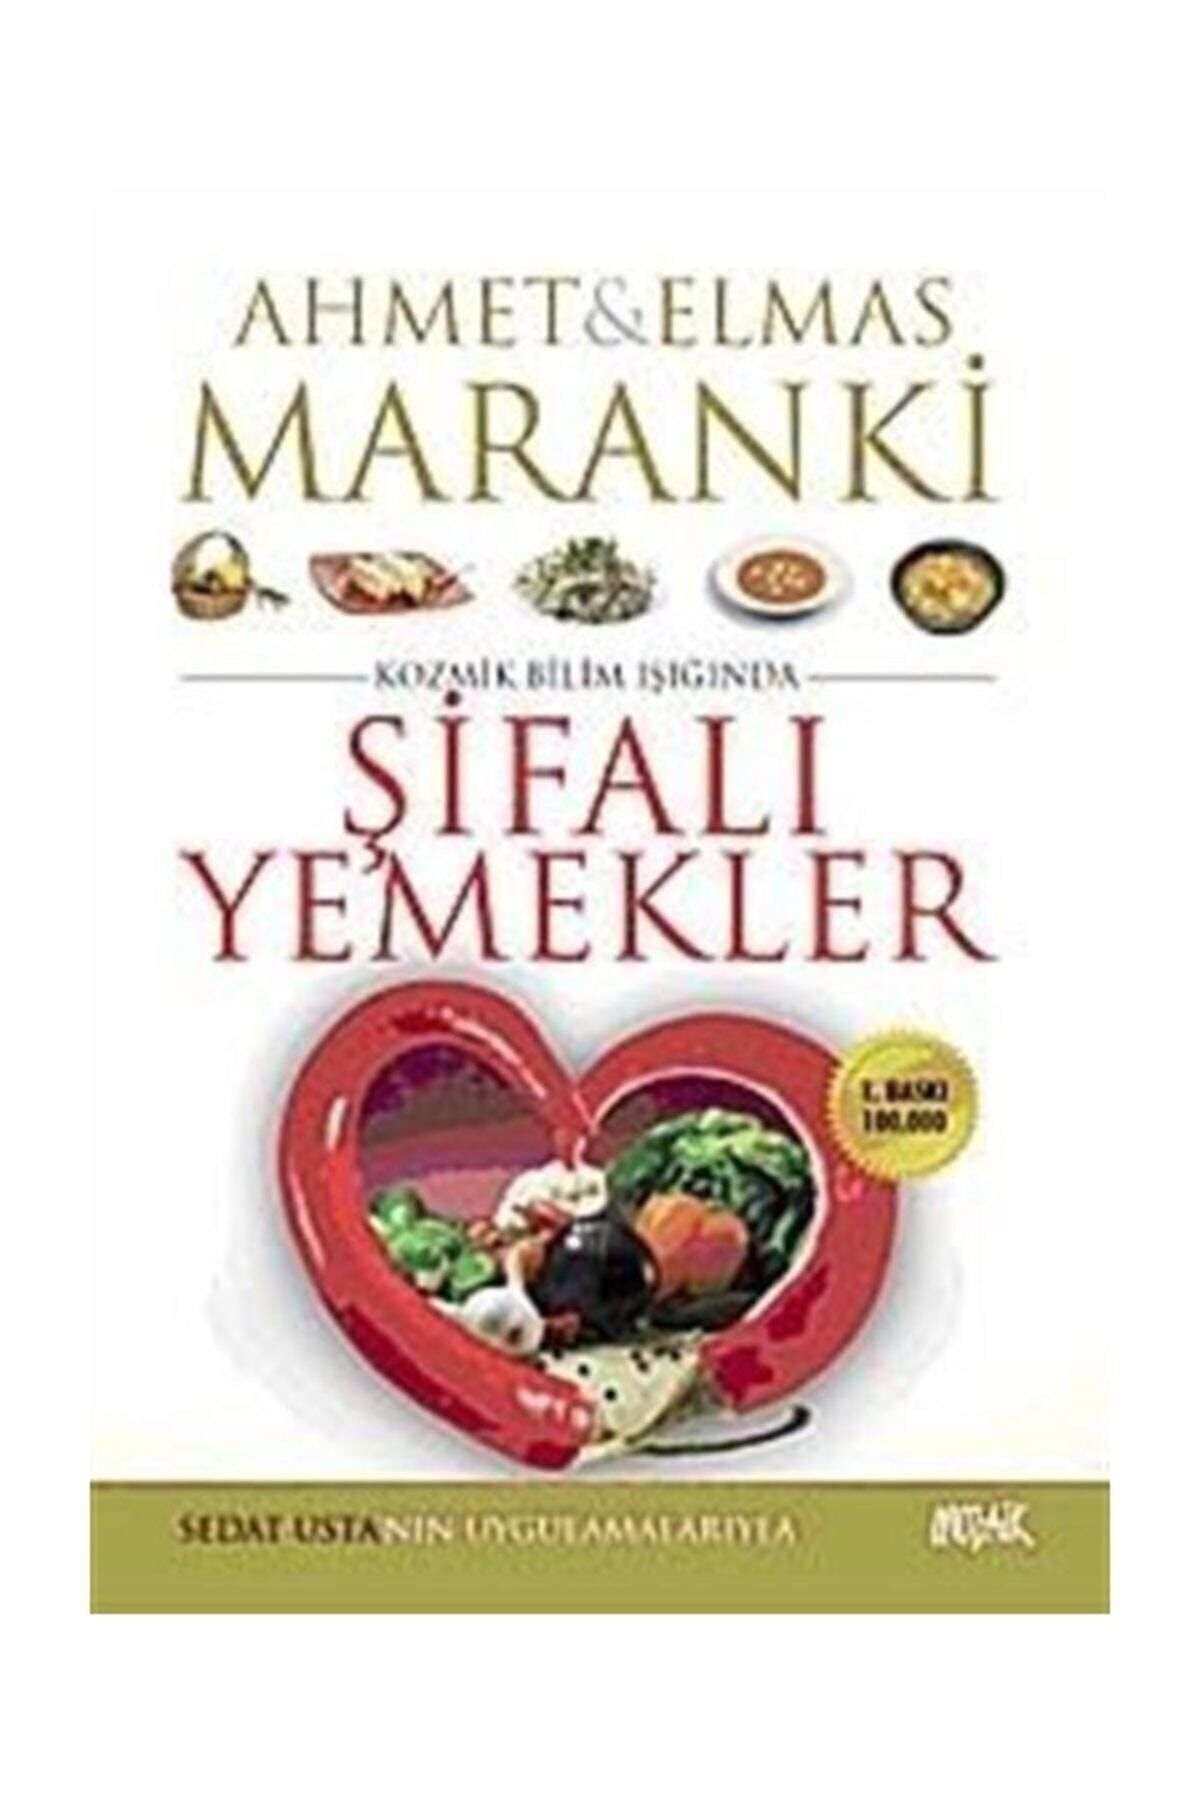 Hayat Şifalı Yemekler Ahmet Maranki - Elmas Maranki